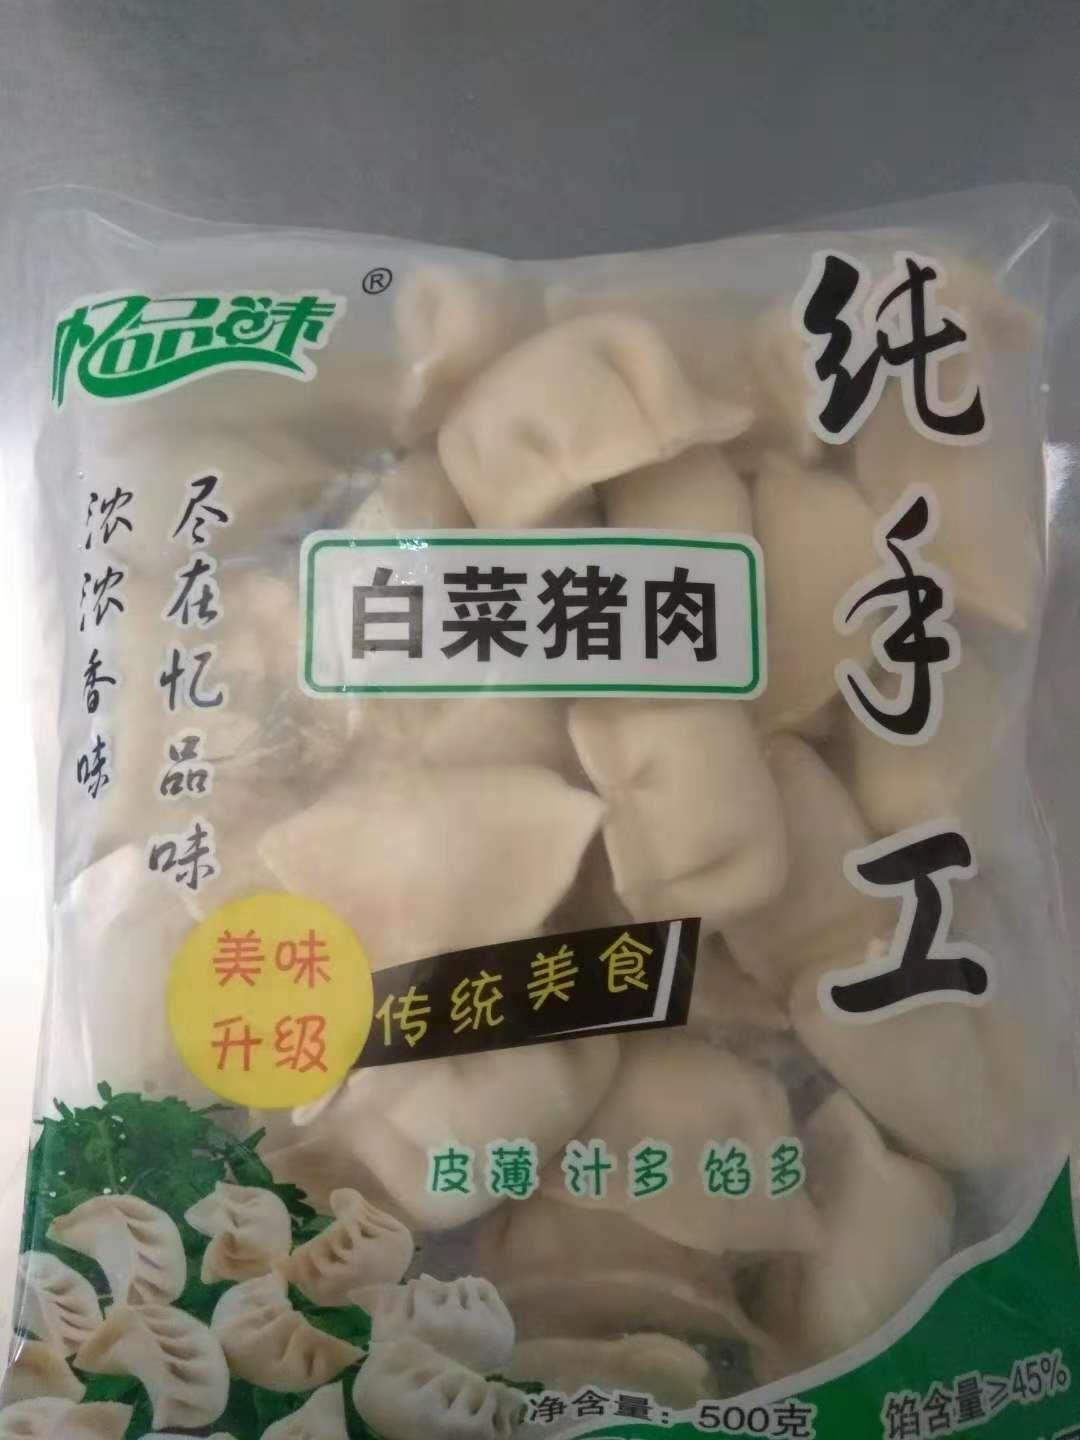 重庆速冻饺子供应商 泗阳县忆品味食品有限公司